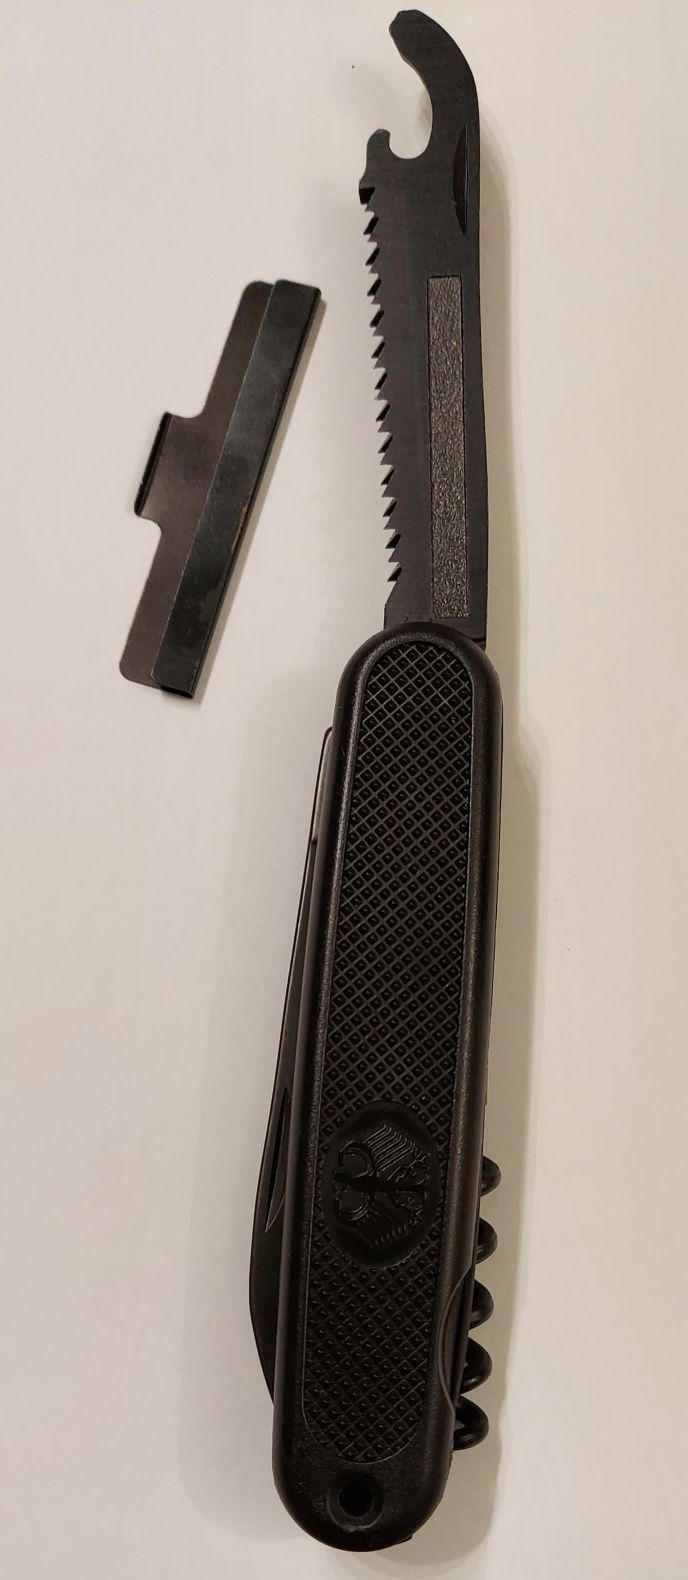 Складной перечиный нож GAK108. в б/у.